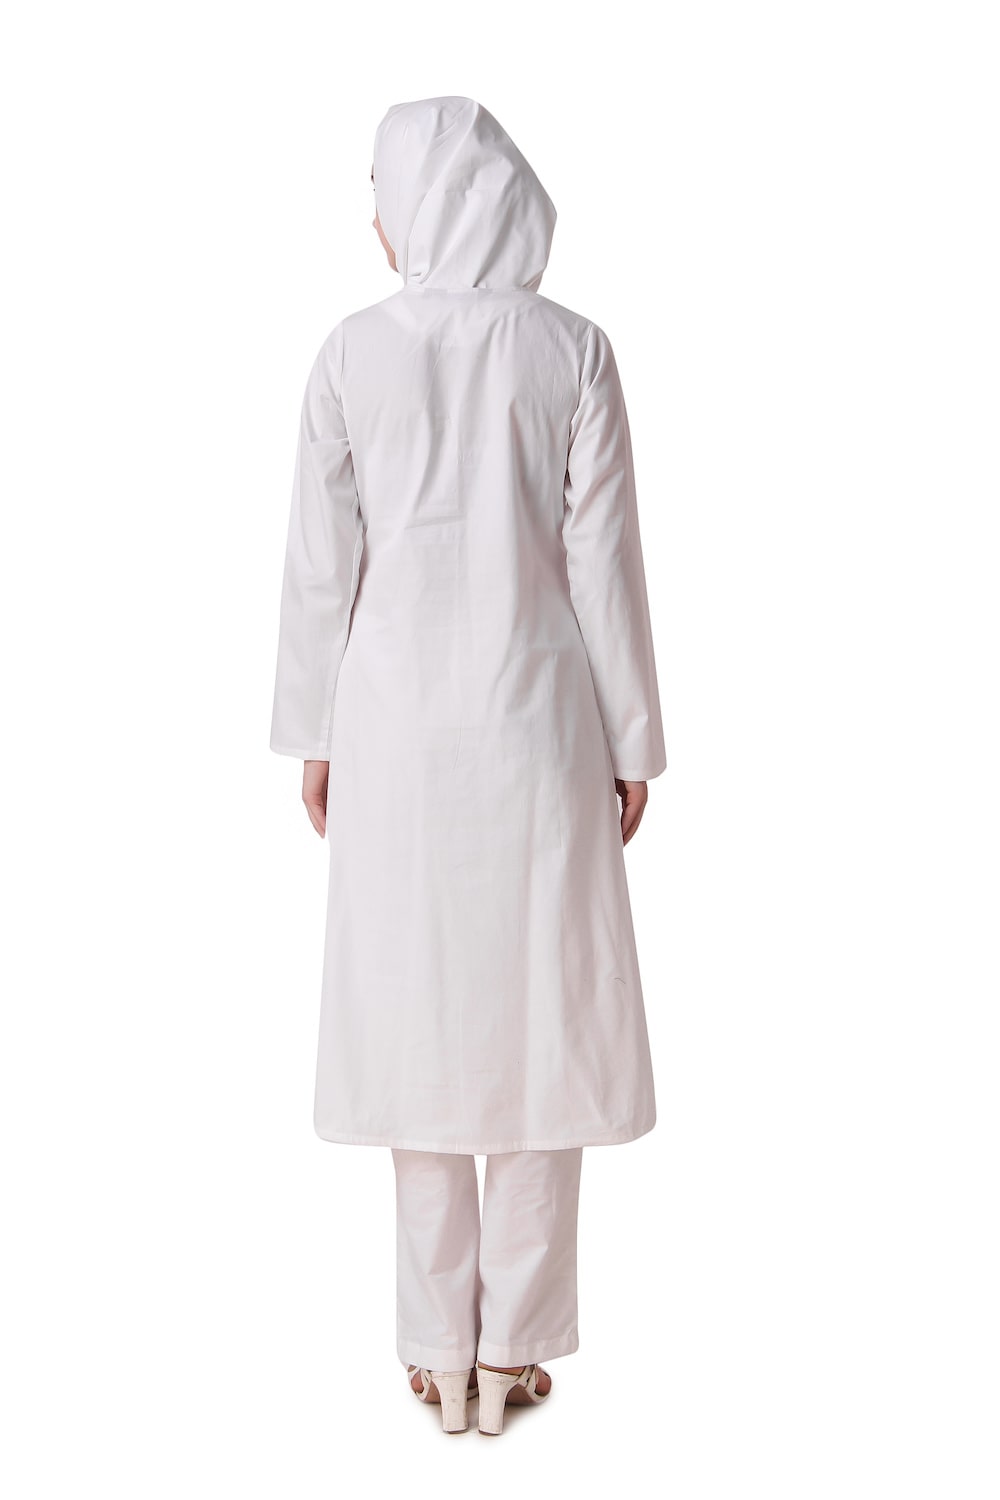 Faraza White Front Open Cotton Salwar Kameez